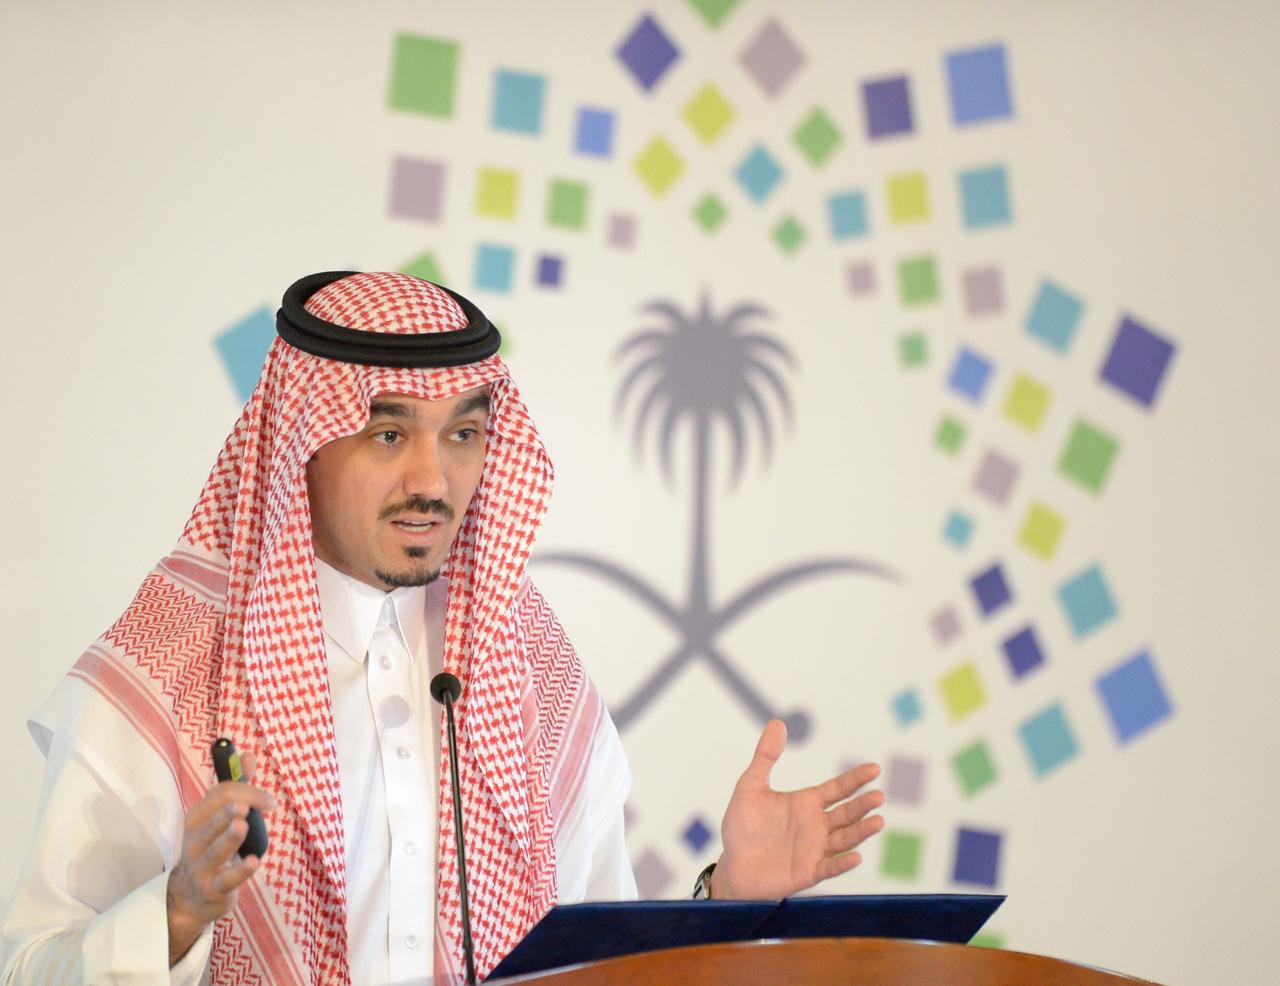 رئيس الهيئة العامة للرياضة يرعى حفل تدشين الدوري السعودي للمحترفين 2019 – 2020 بجدة الأحد القادم